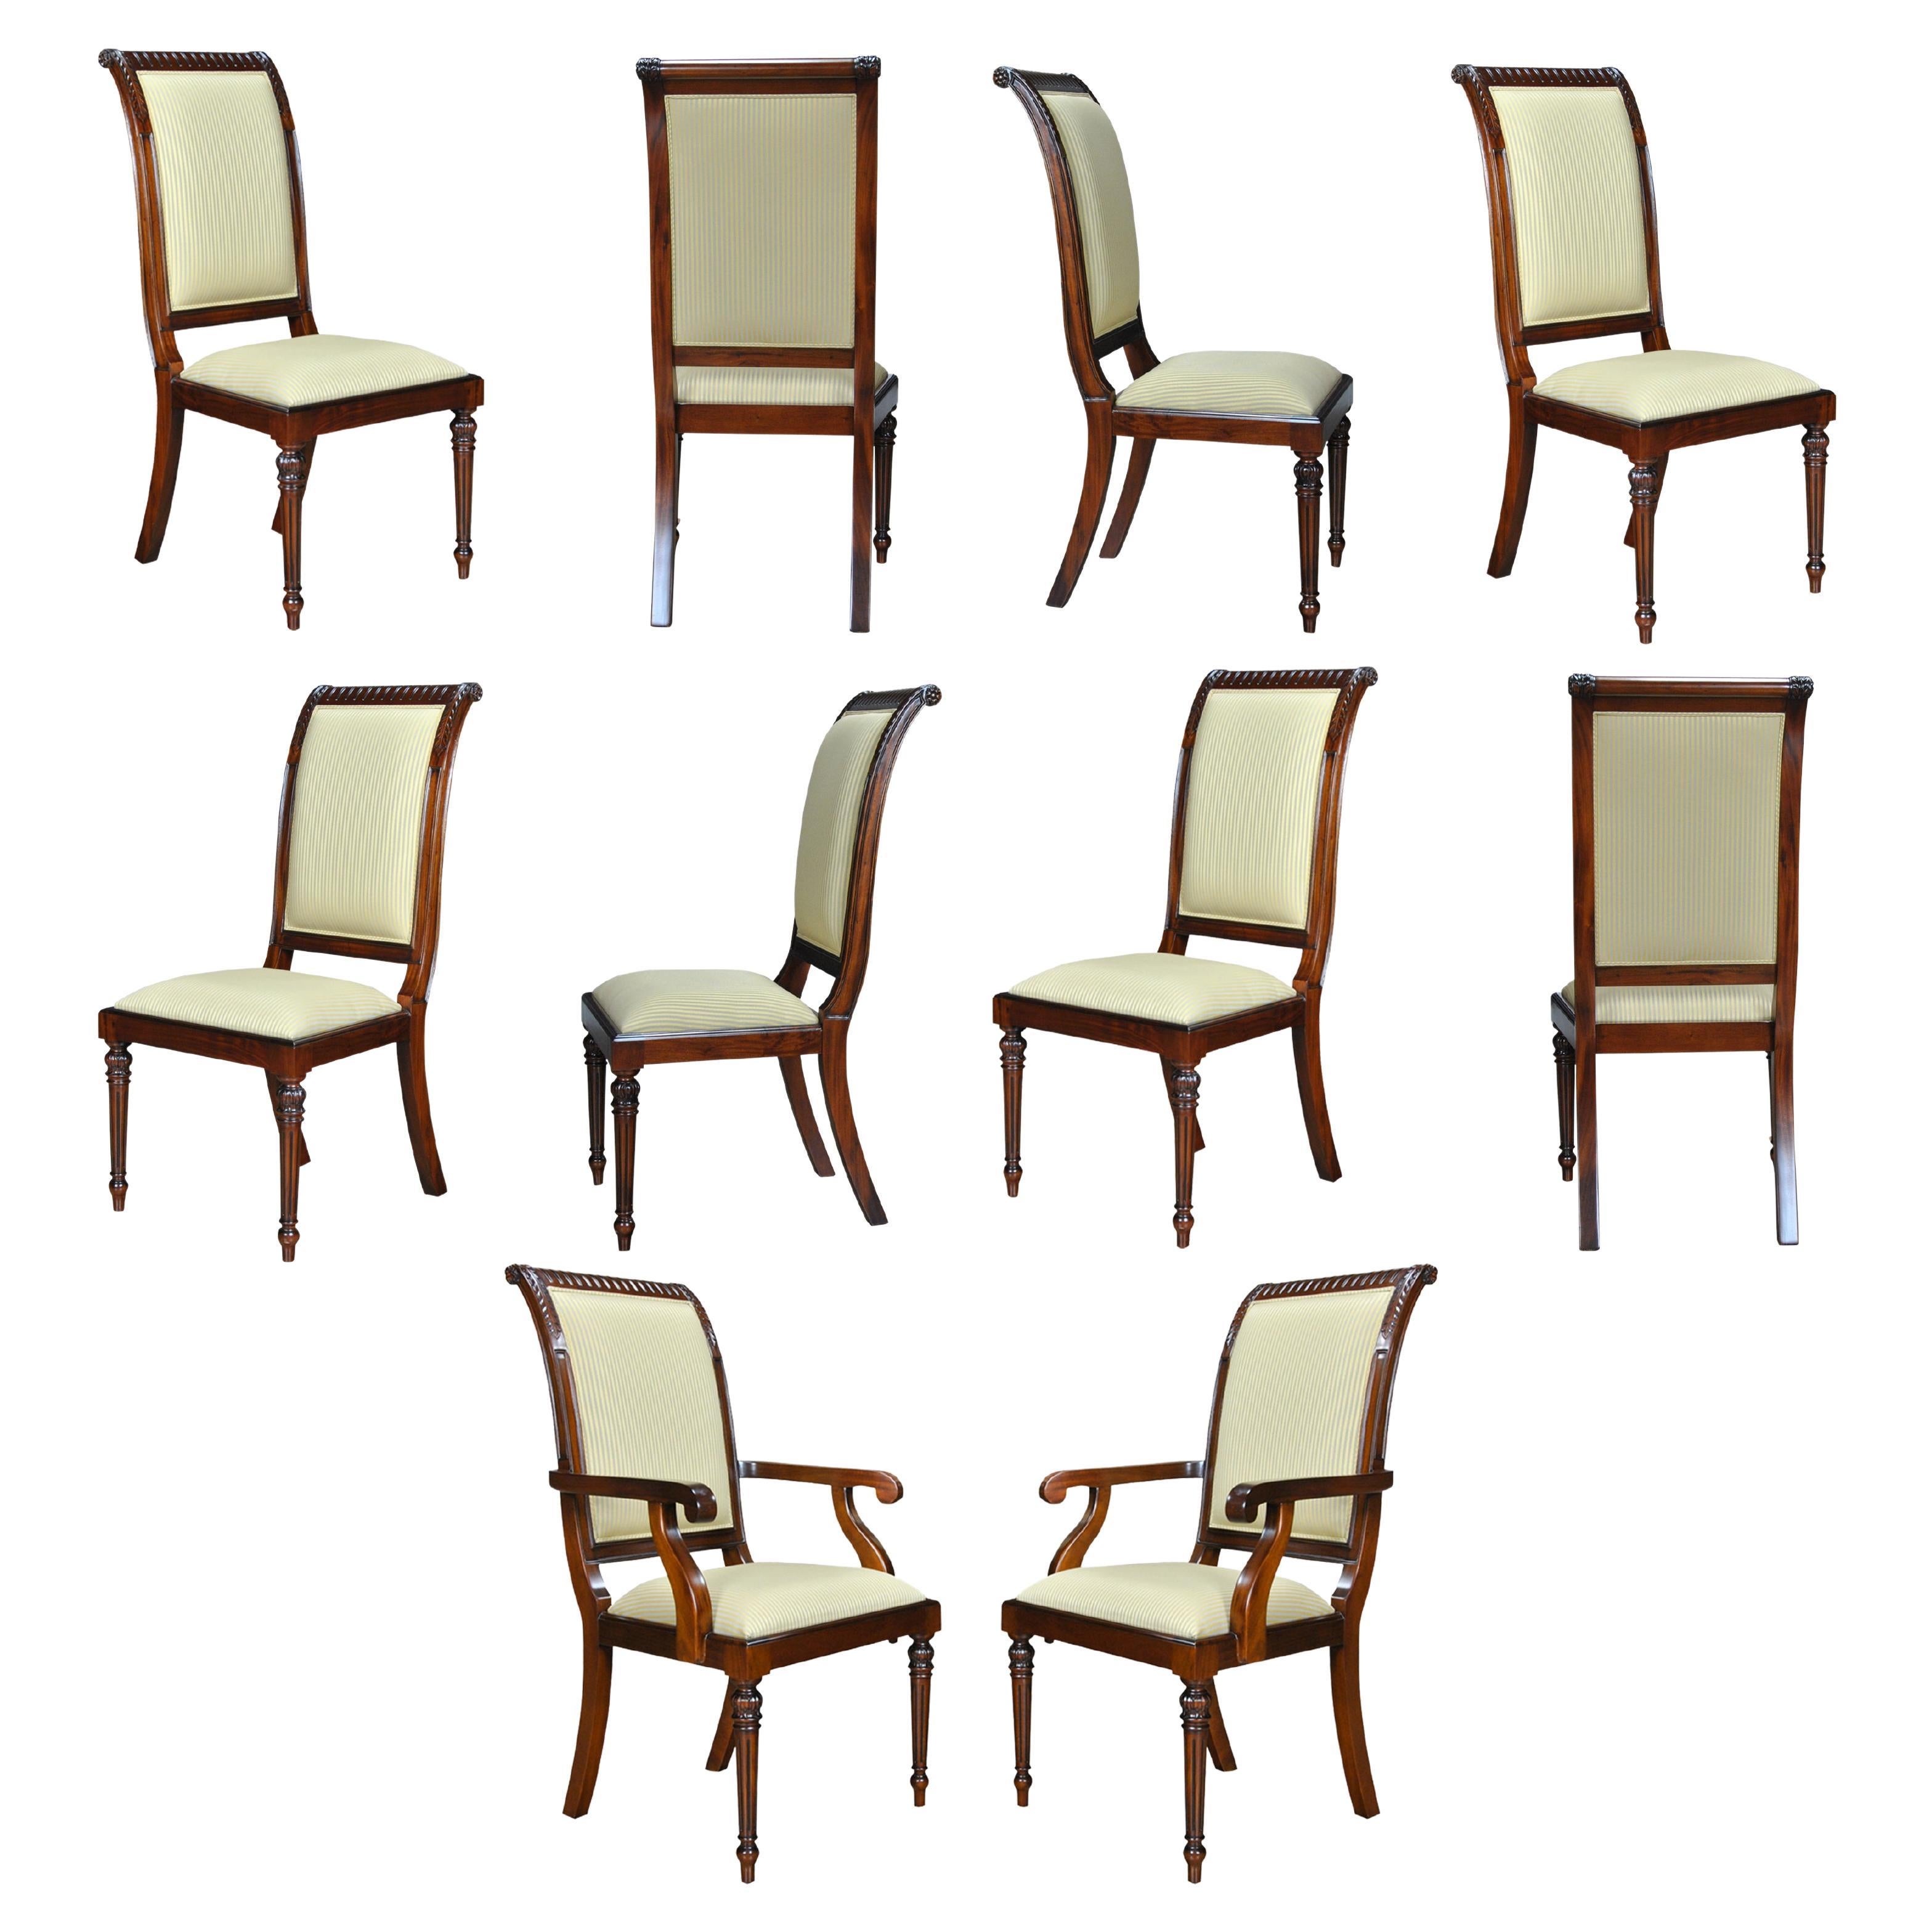 Gepolsterte Stühle mit hoher Rückenlehne, 10er-Set 